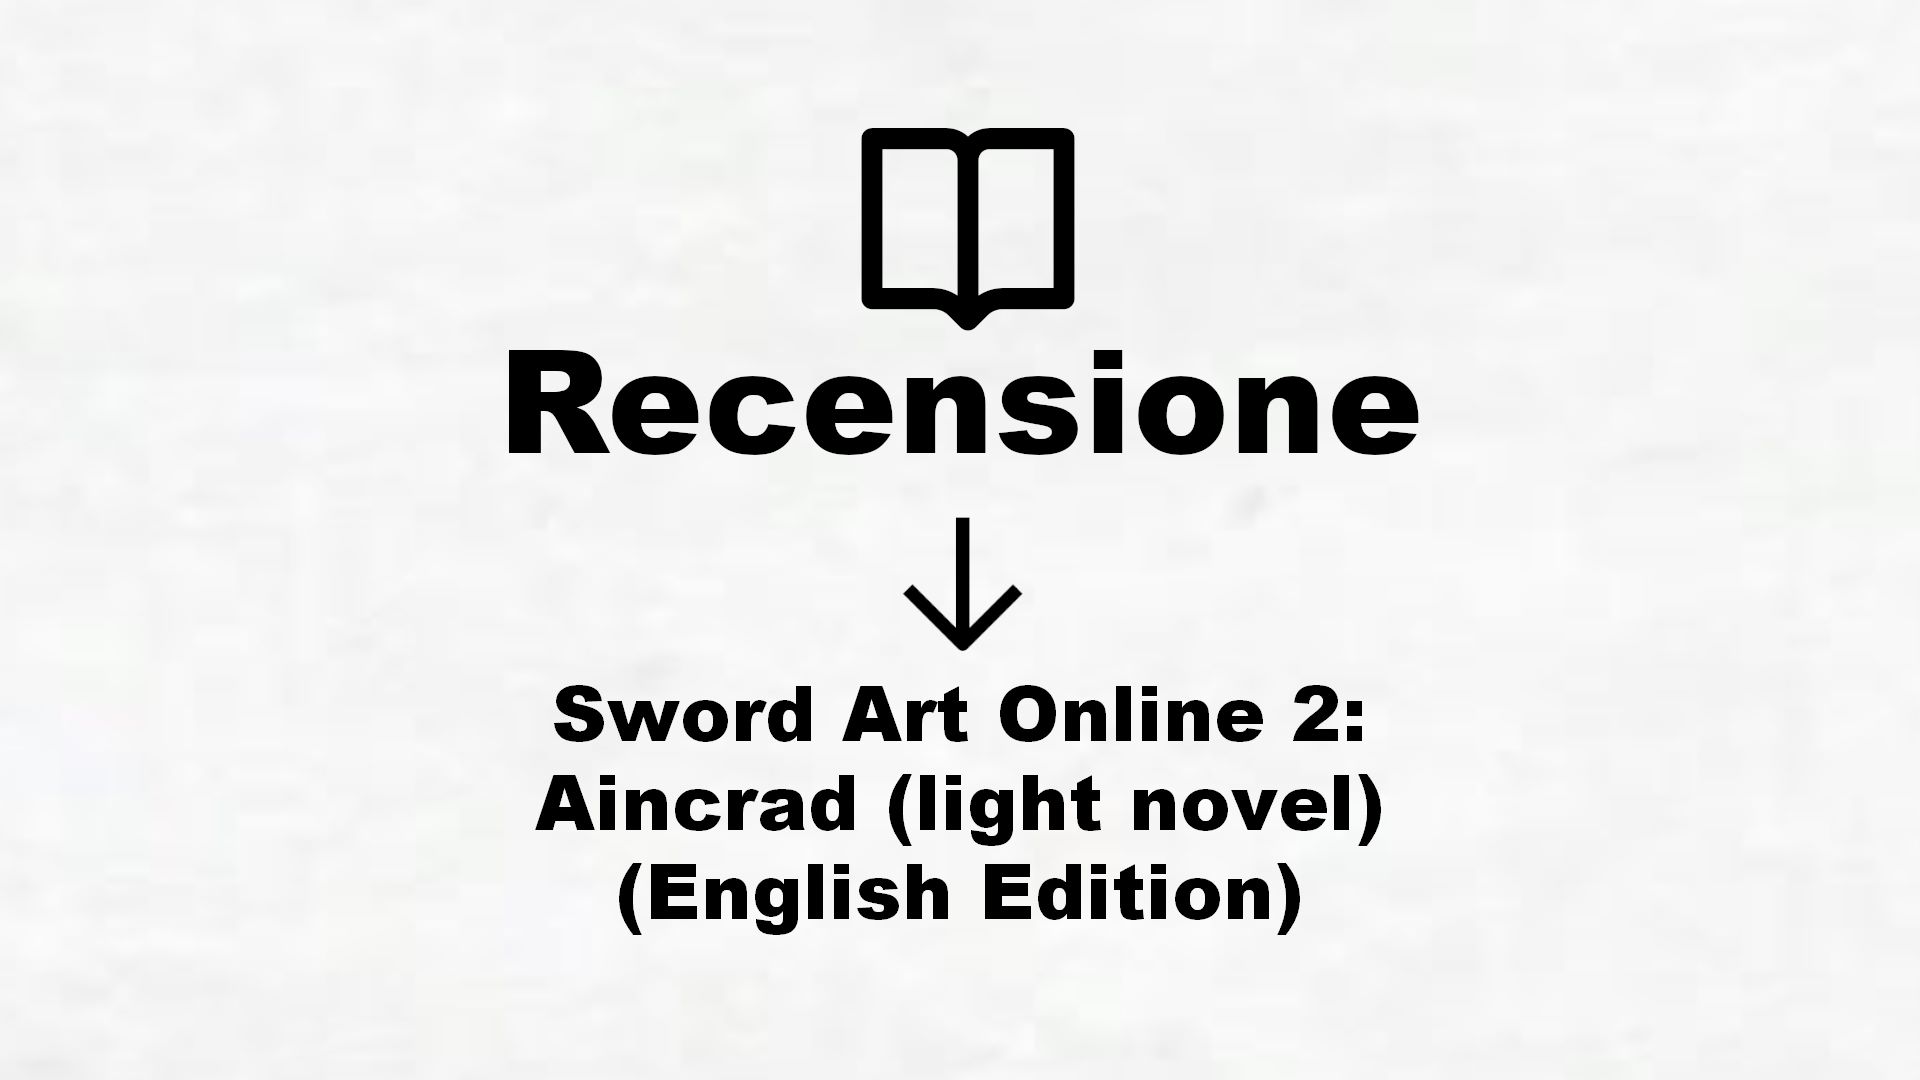 Sword Art Online 2: Aincrad (light novel) (English Edition) – Recensione Libro